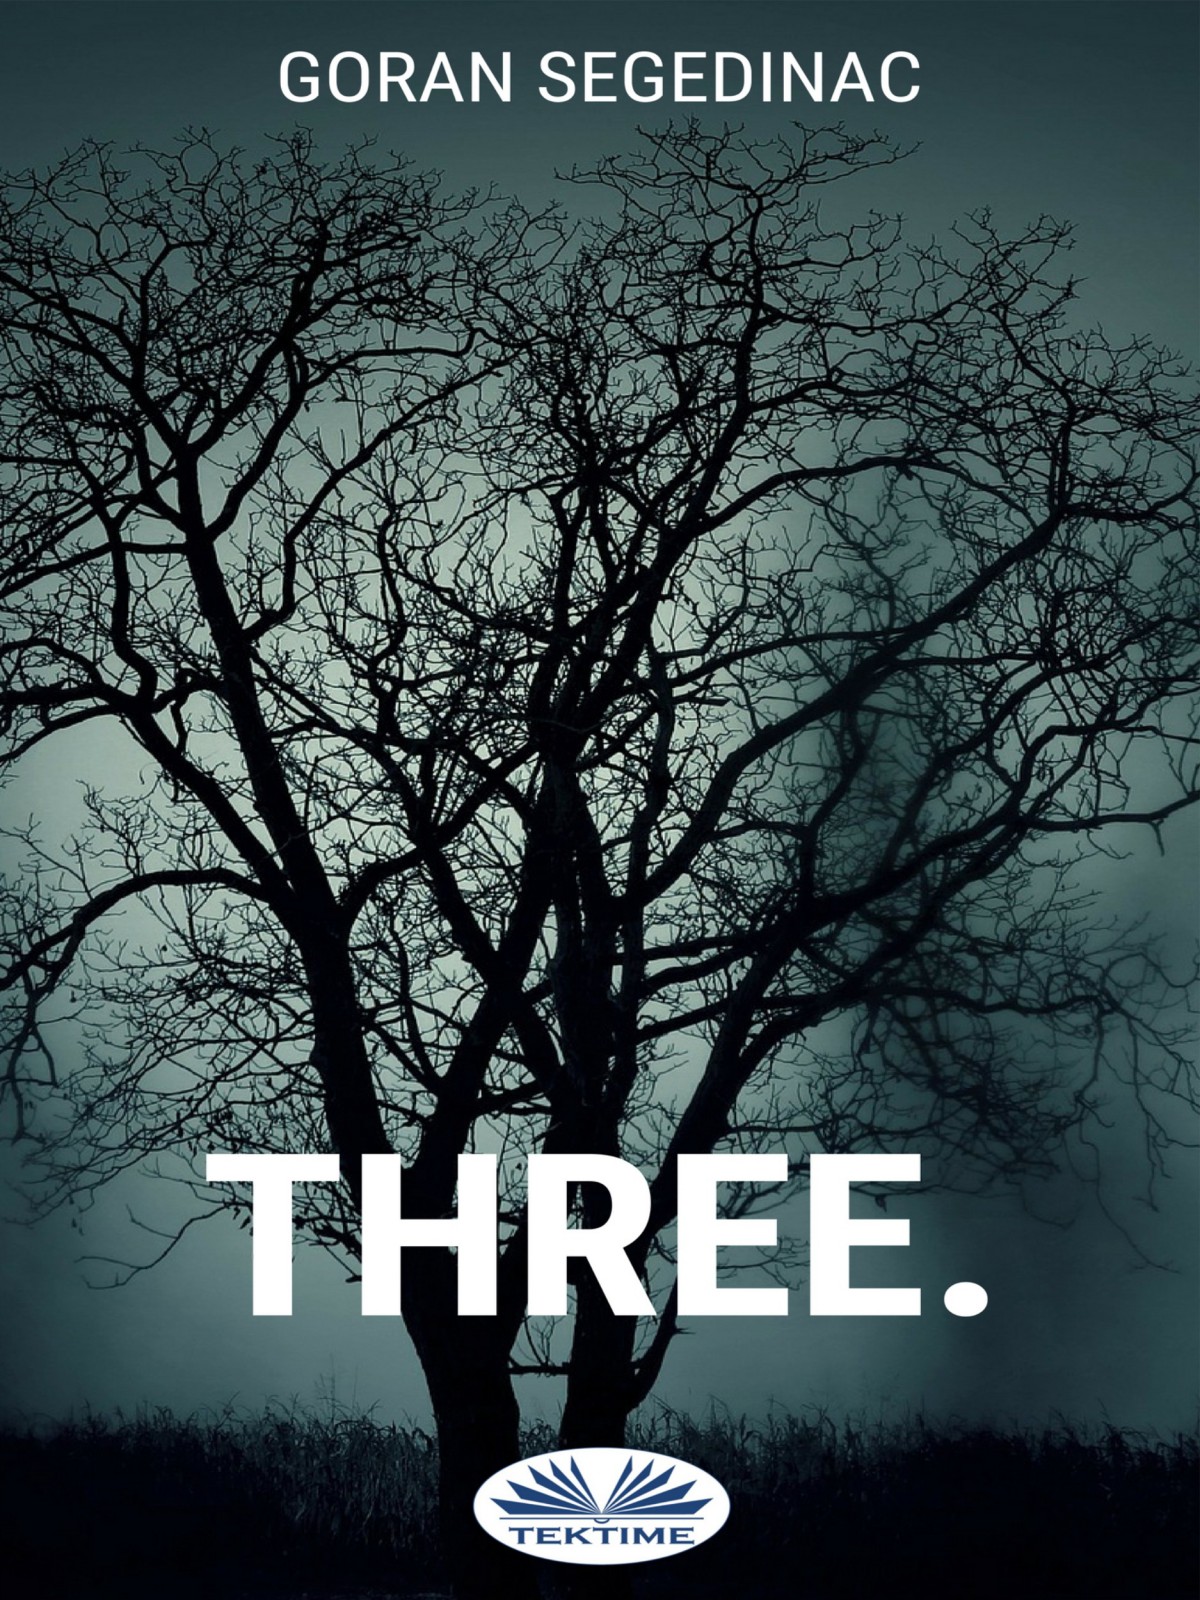 Three.